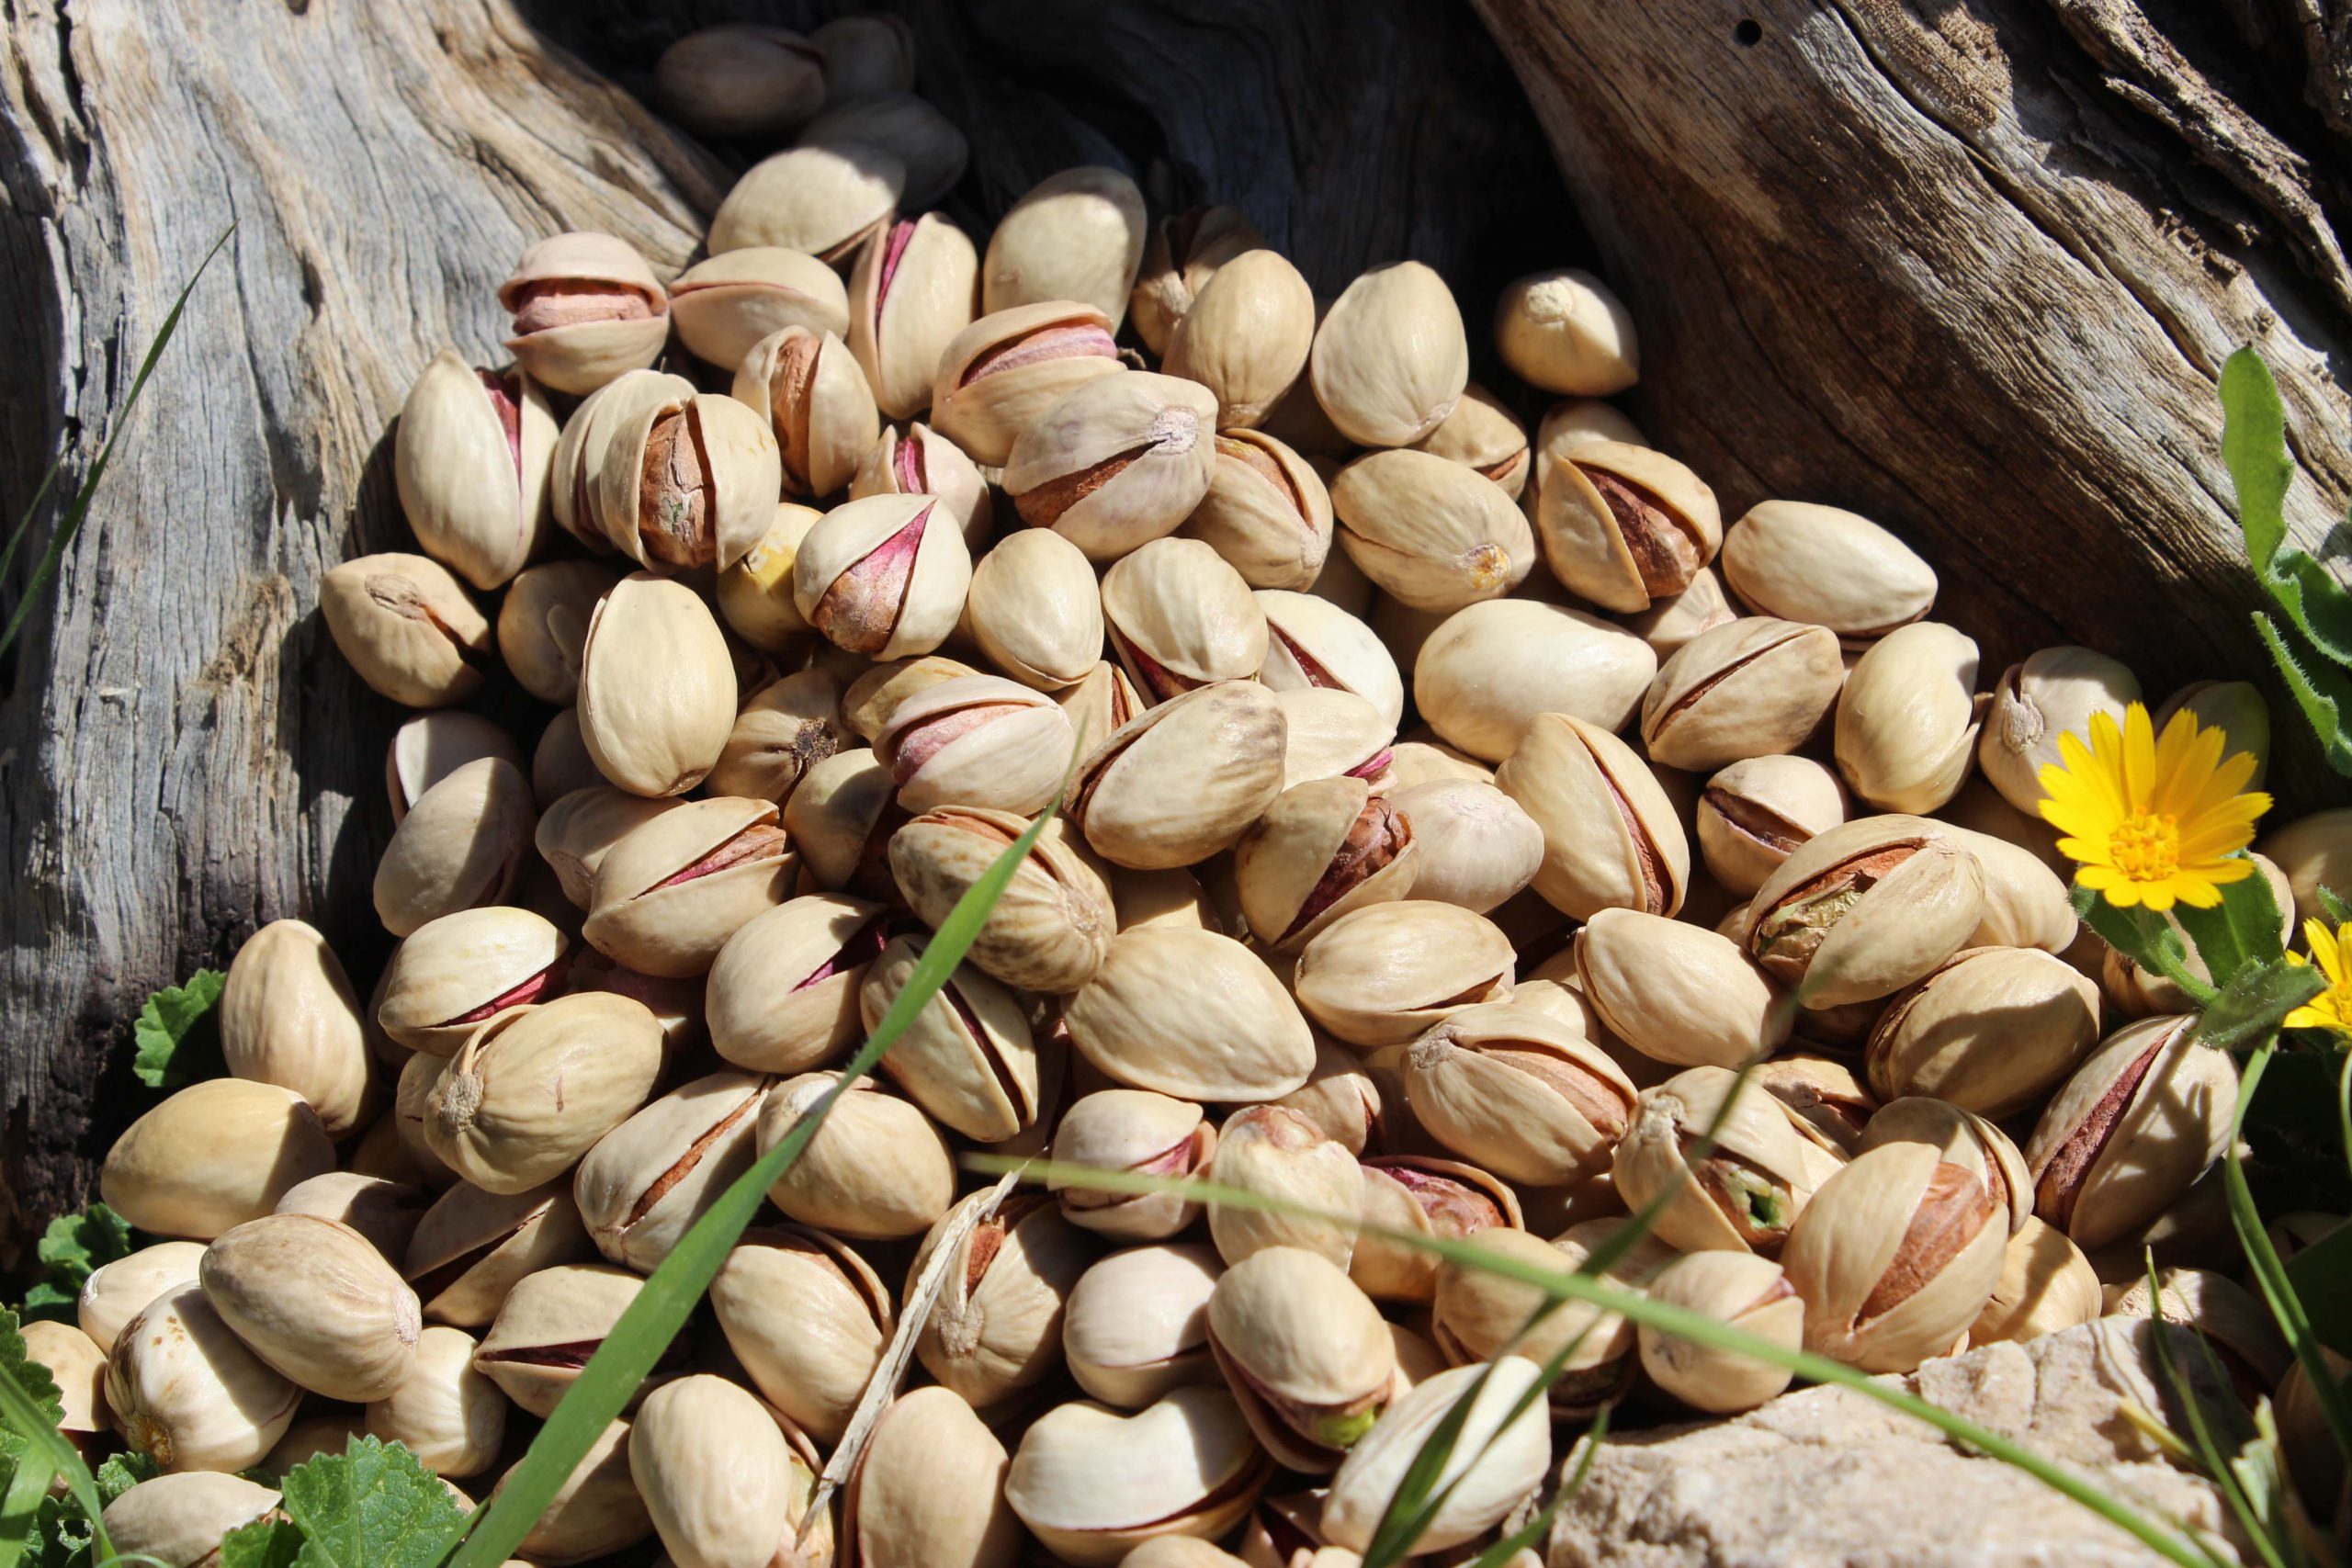 Export of Iranian pistachios to Hungary